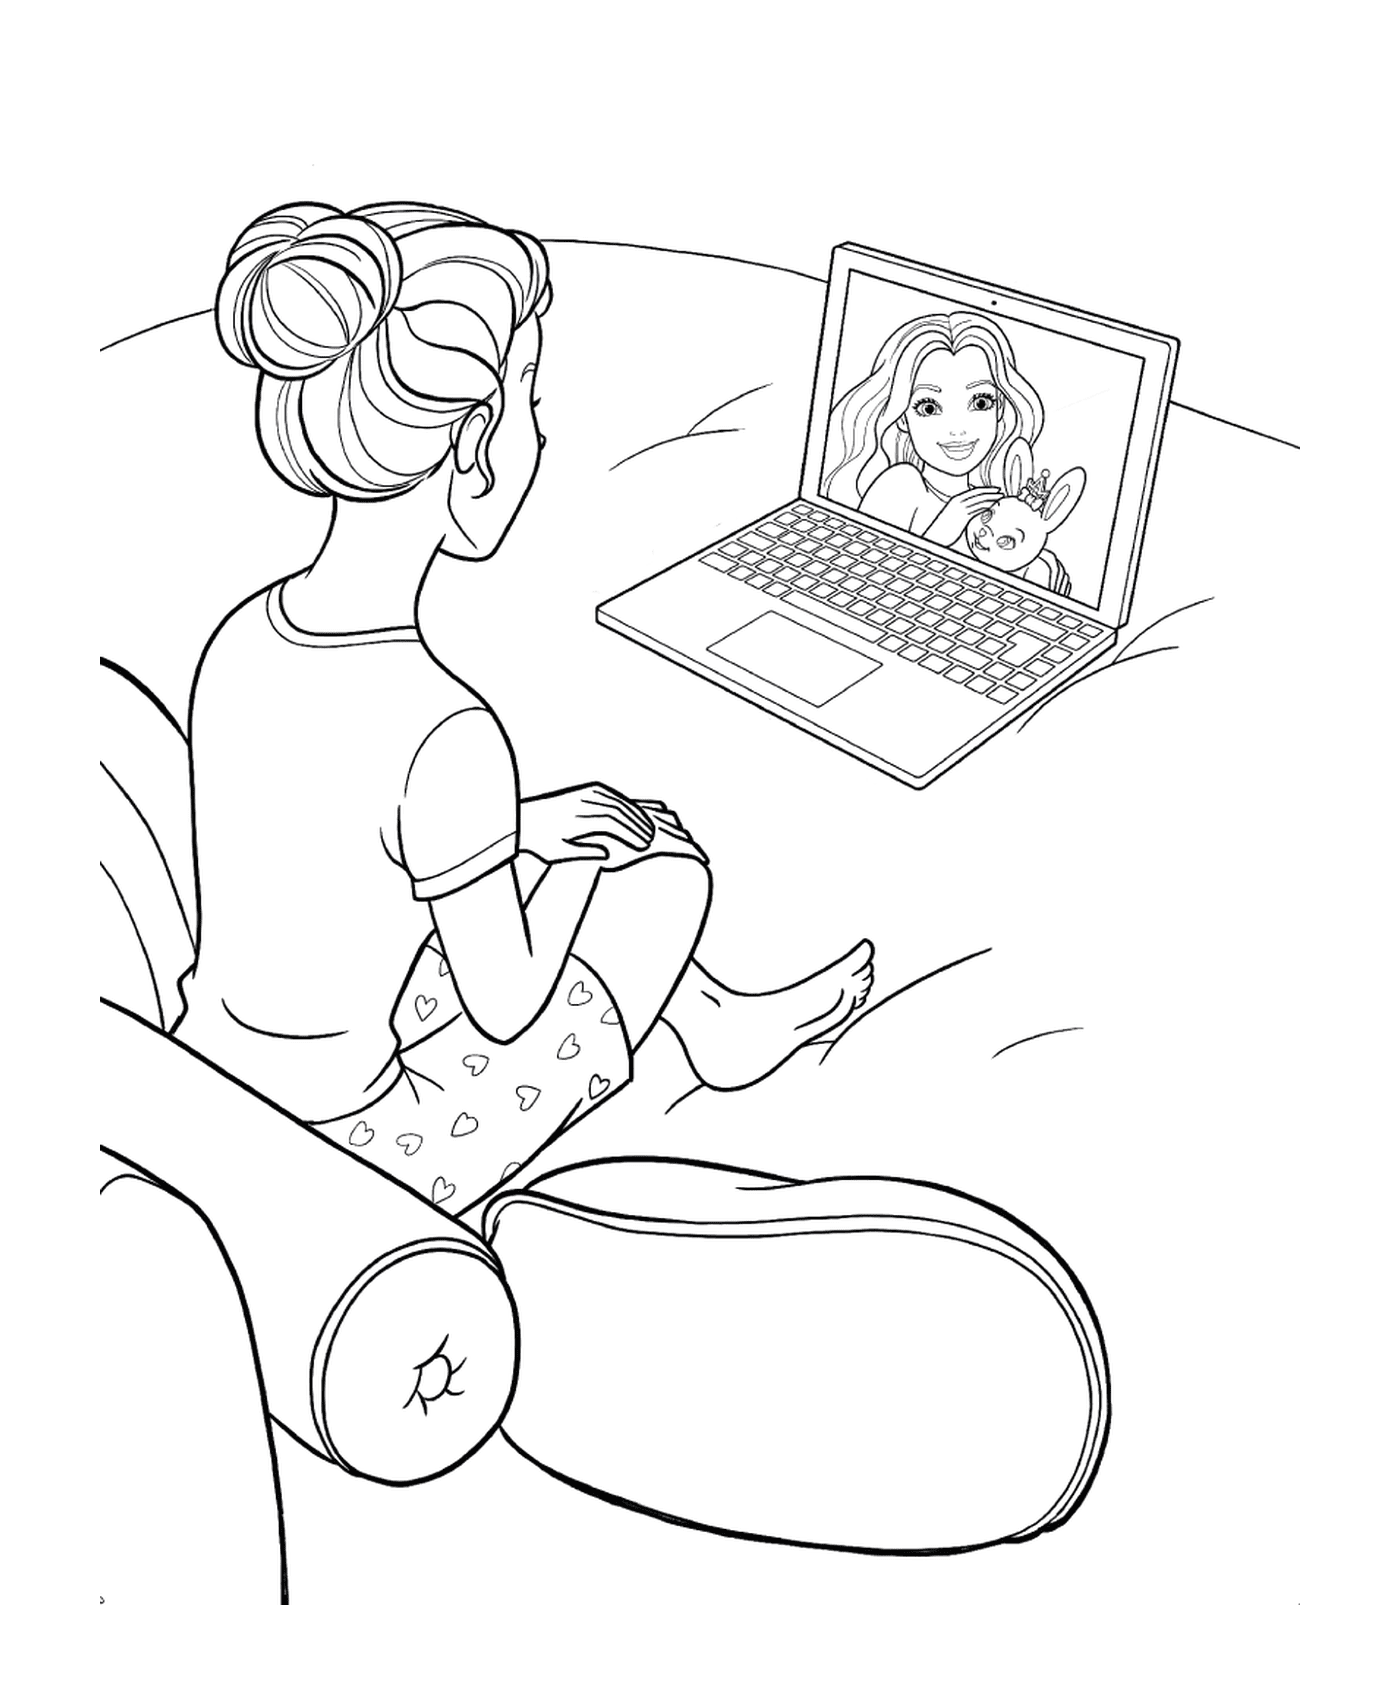   Une femme assise devant un ordinateur portable 